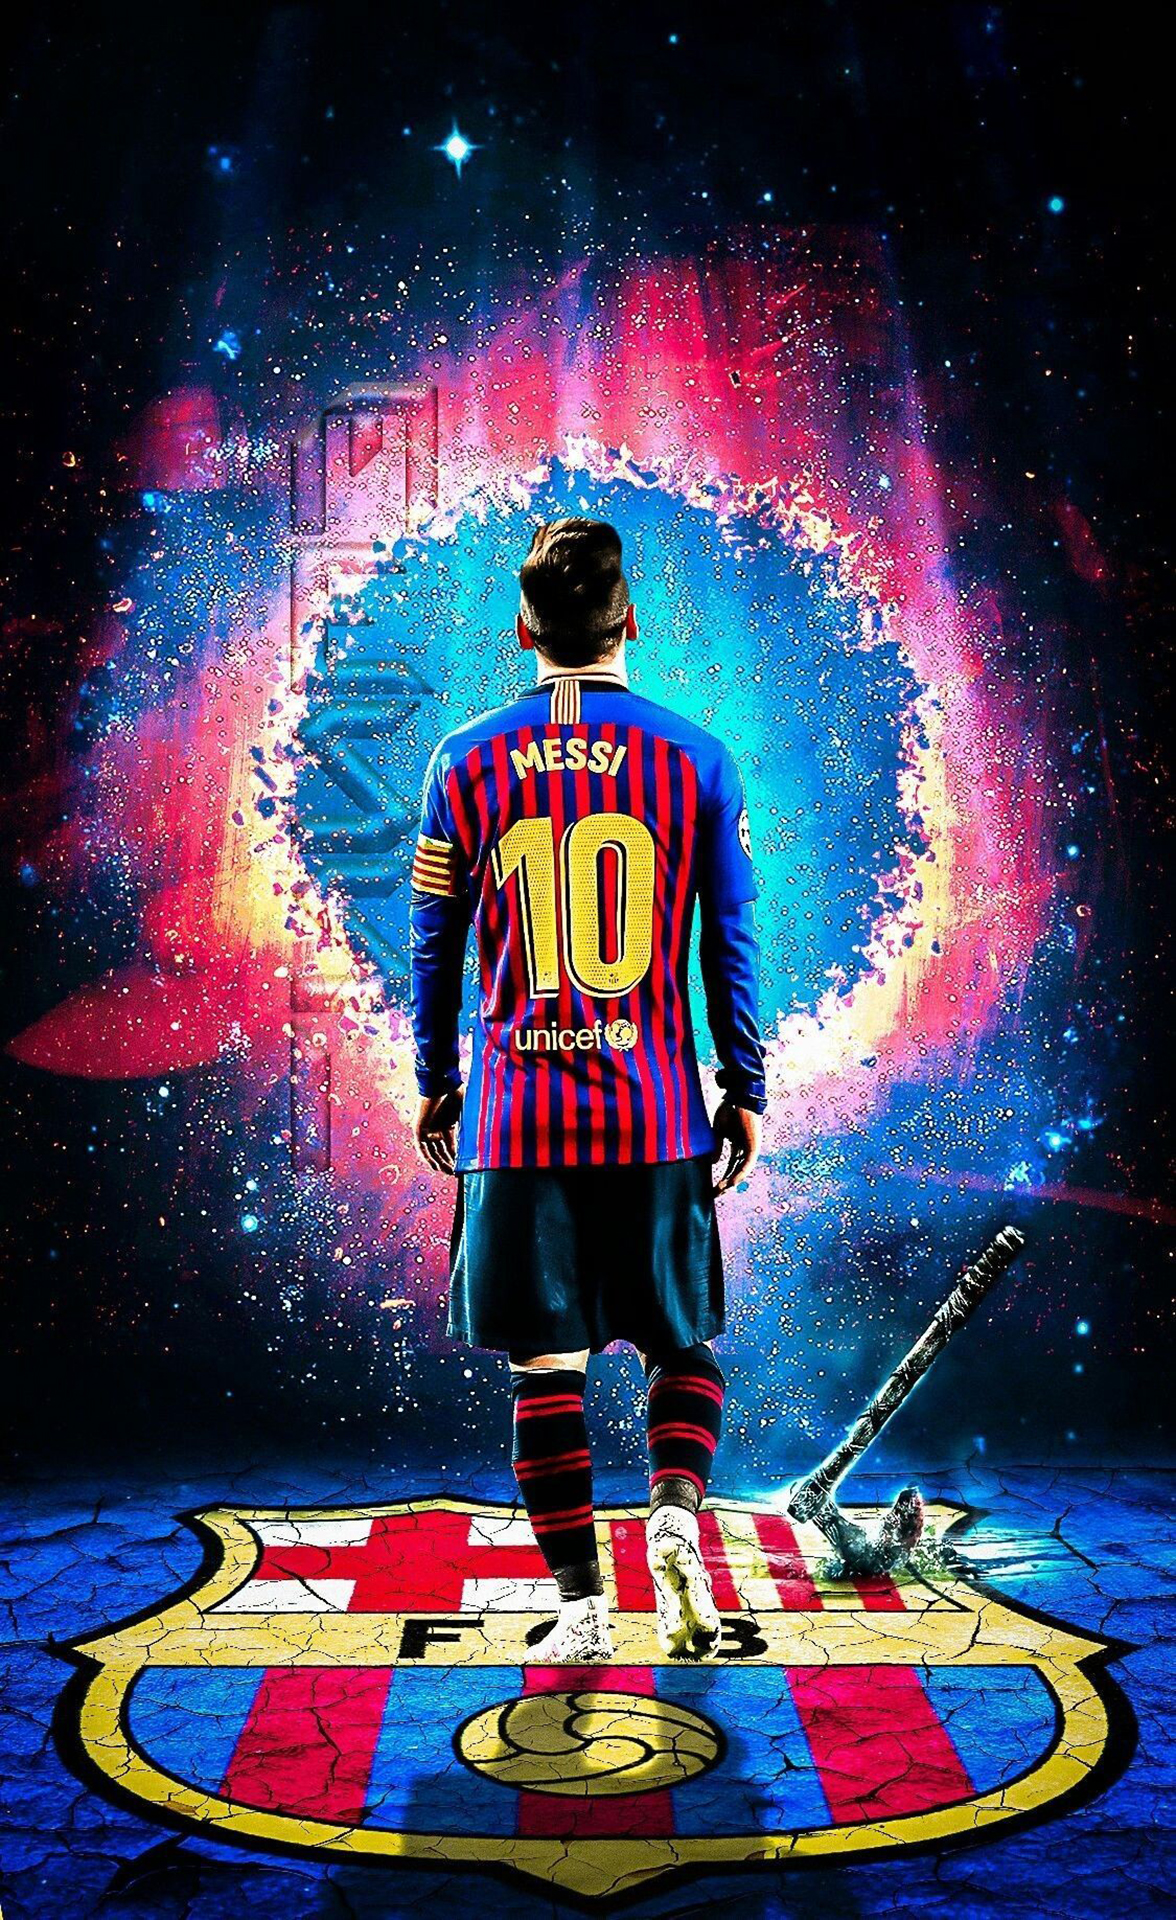 Không thể bỏ lỡ ảnh 3D Messi tuyệt đẹp này. Chắc chắn bạn sẽ bị cuốn hút vào không gian đầy mê hoặc này khi chiêm ngưỡng hình ảnh thiên tài bóng đá với đầy sức sống. Hãy cùng trải nghiệm ngay nhé!